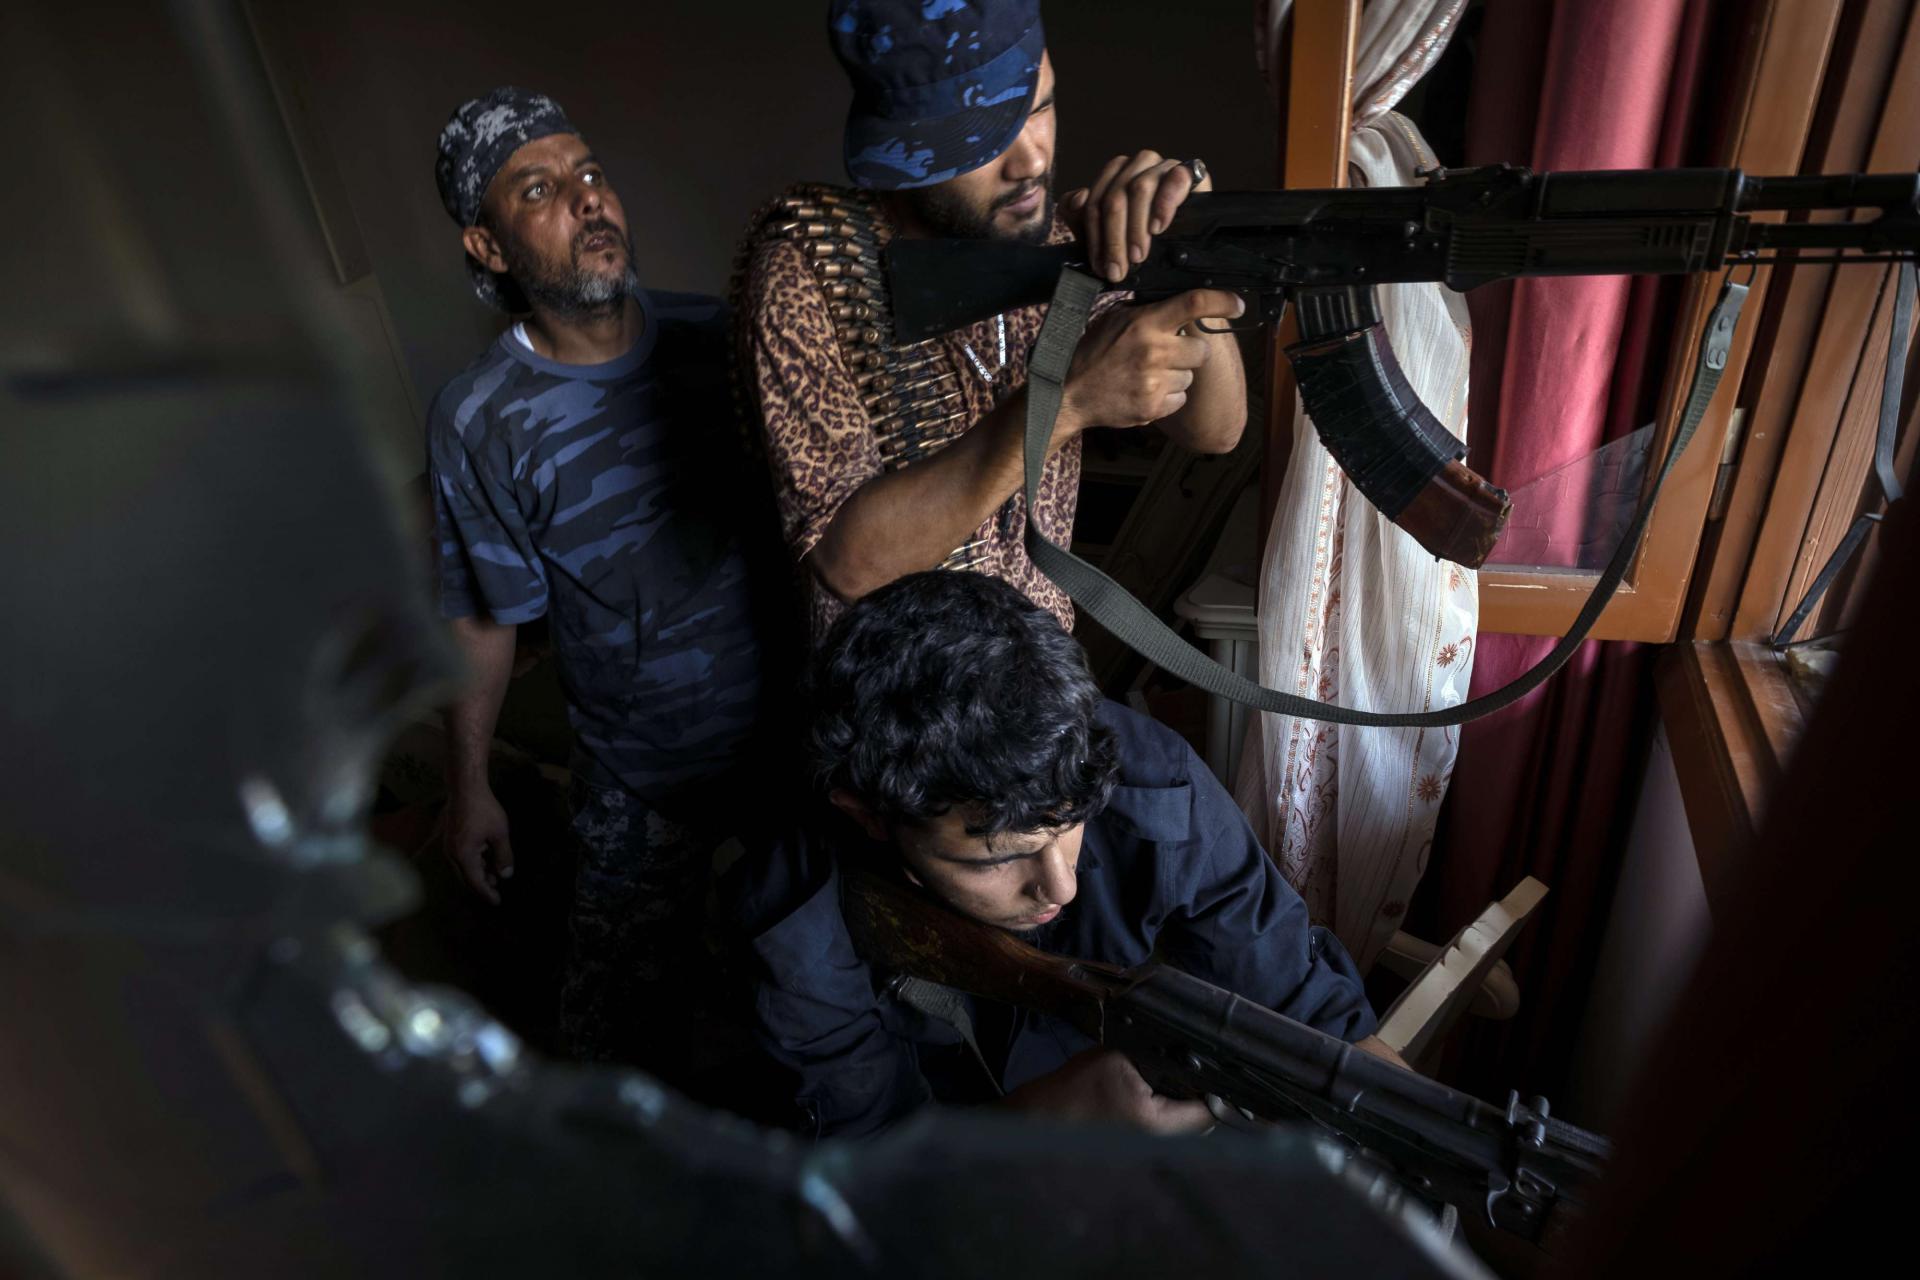 مقاتلون موالون لحكومة الوفاق الليبية